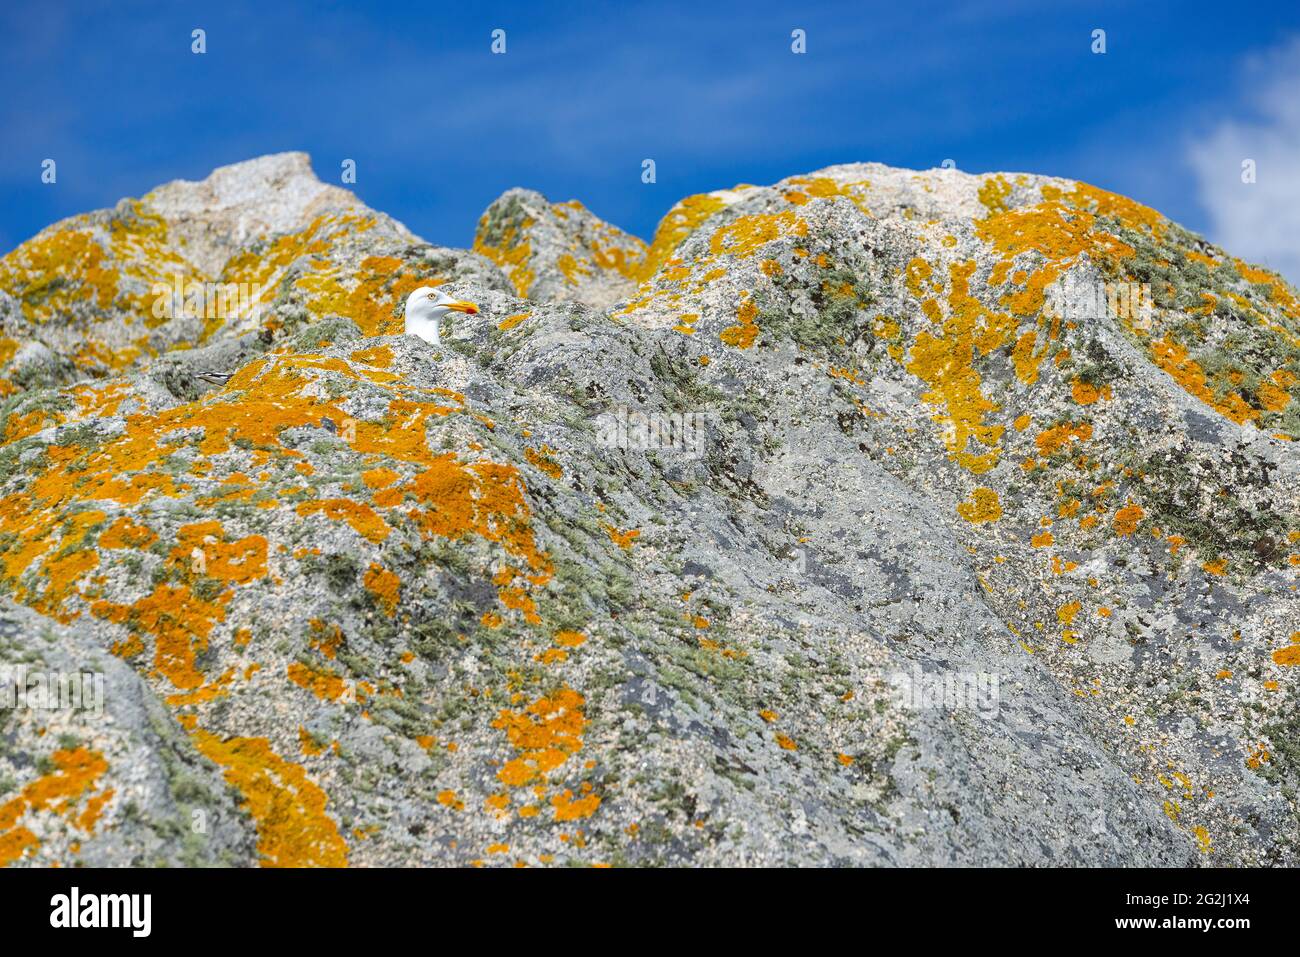 Mouette et lichen jaune sur un rocher, Île de sein, France, Bretagne, département du Finistère Banque D'Images